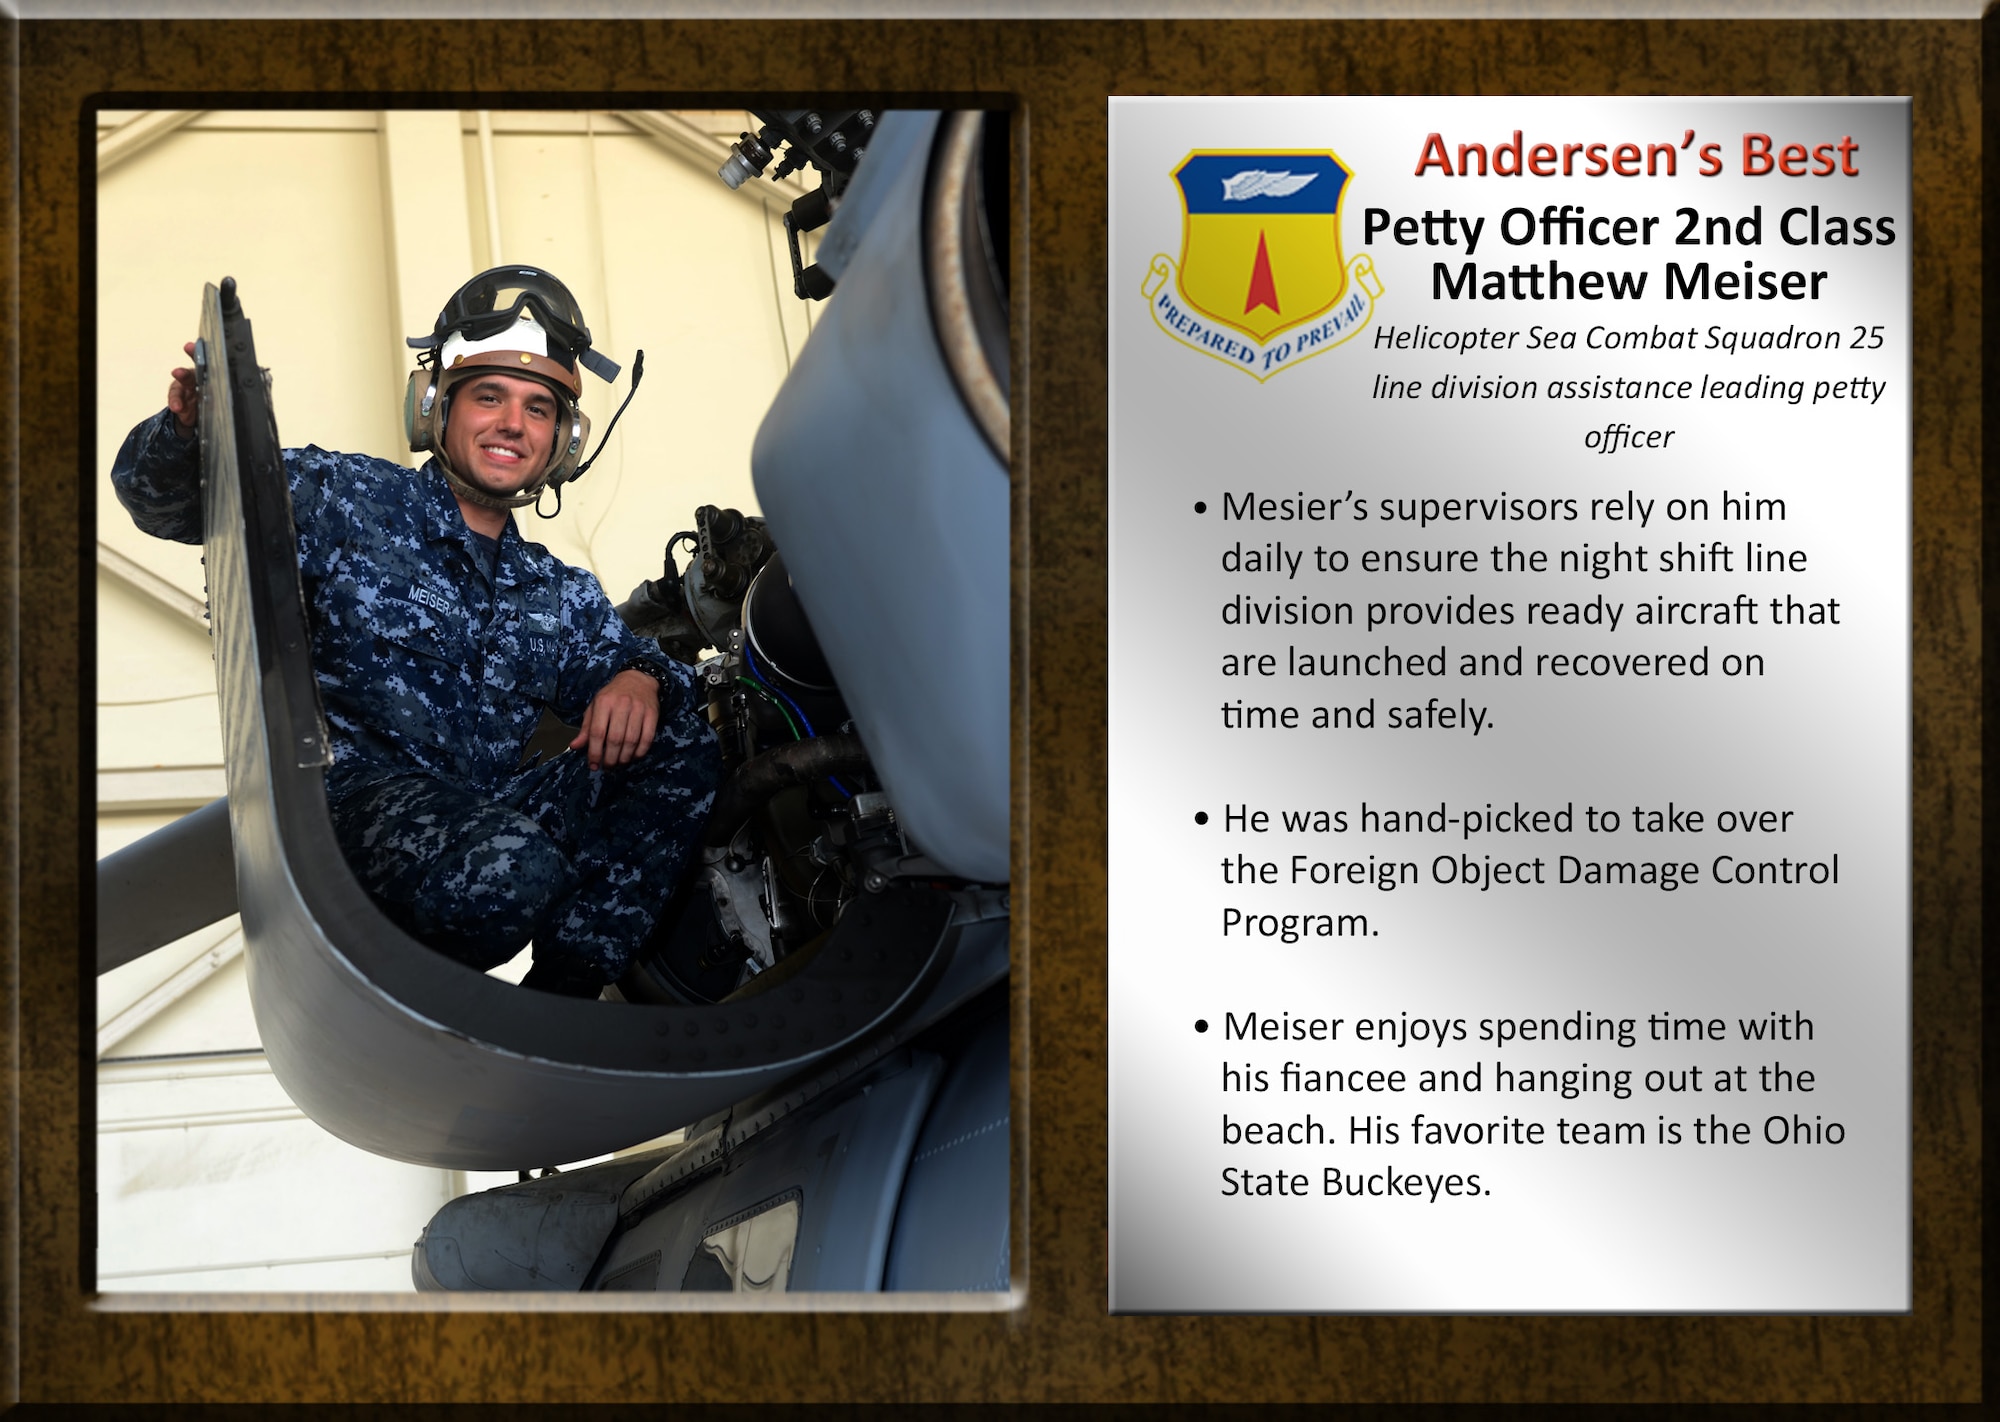 Team Andersen's Best: Petty Officer 2nd Class Matthew Meiser